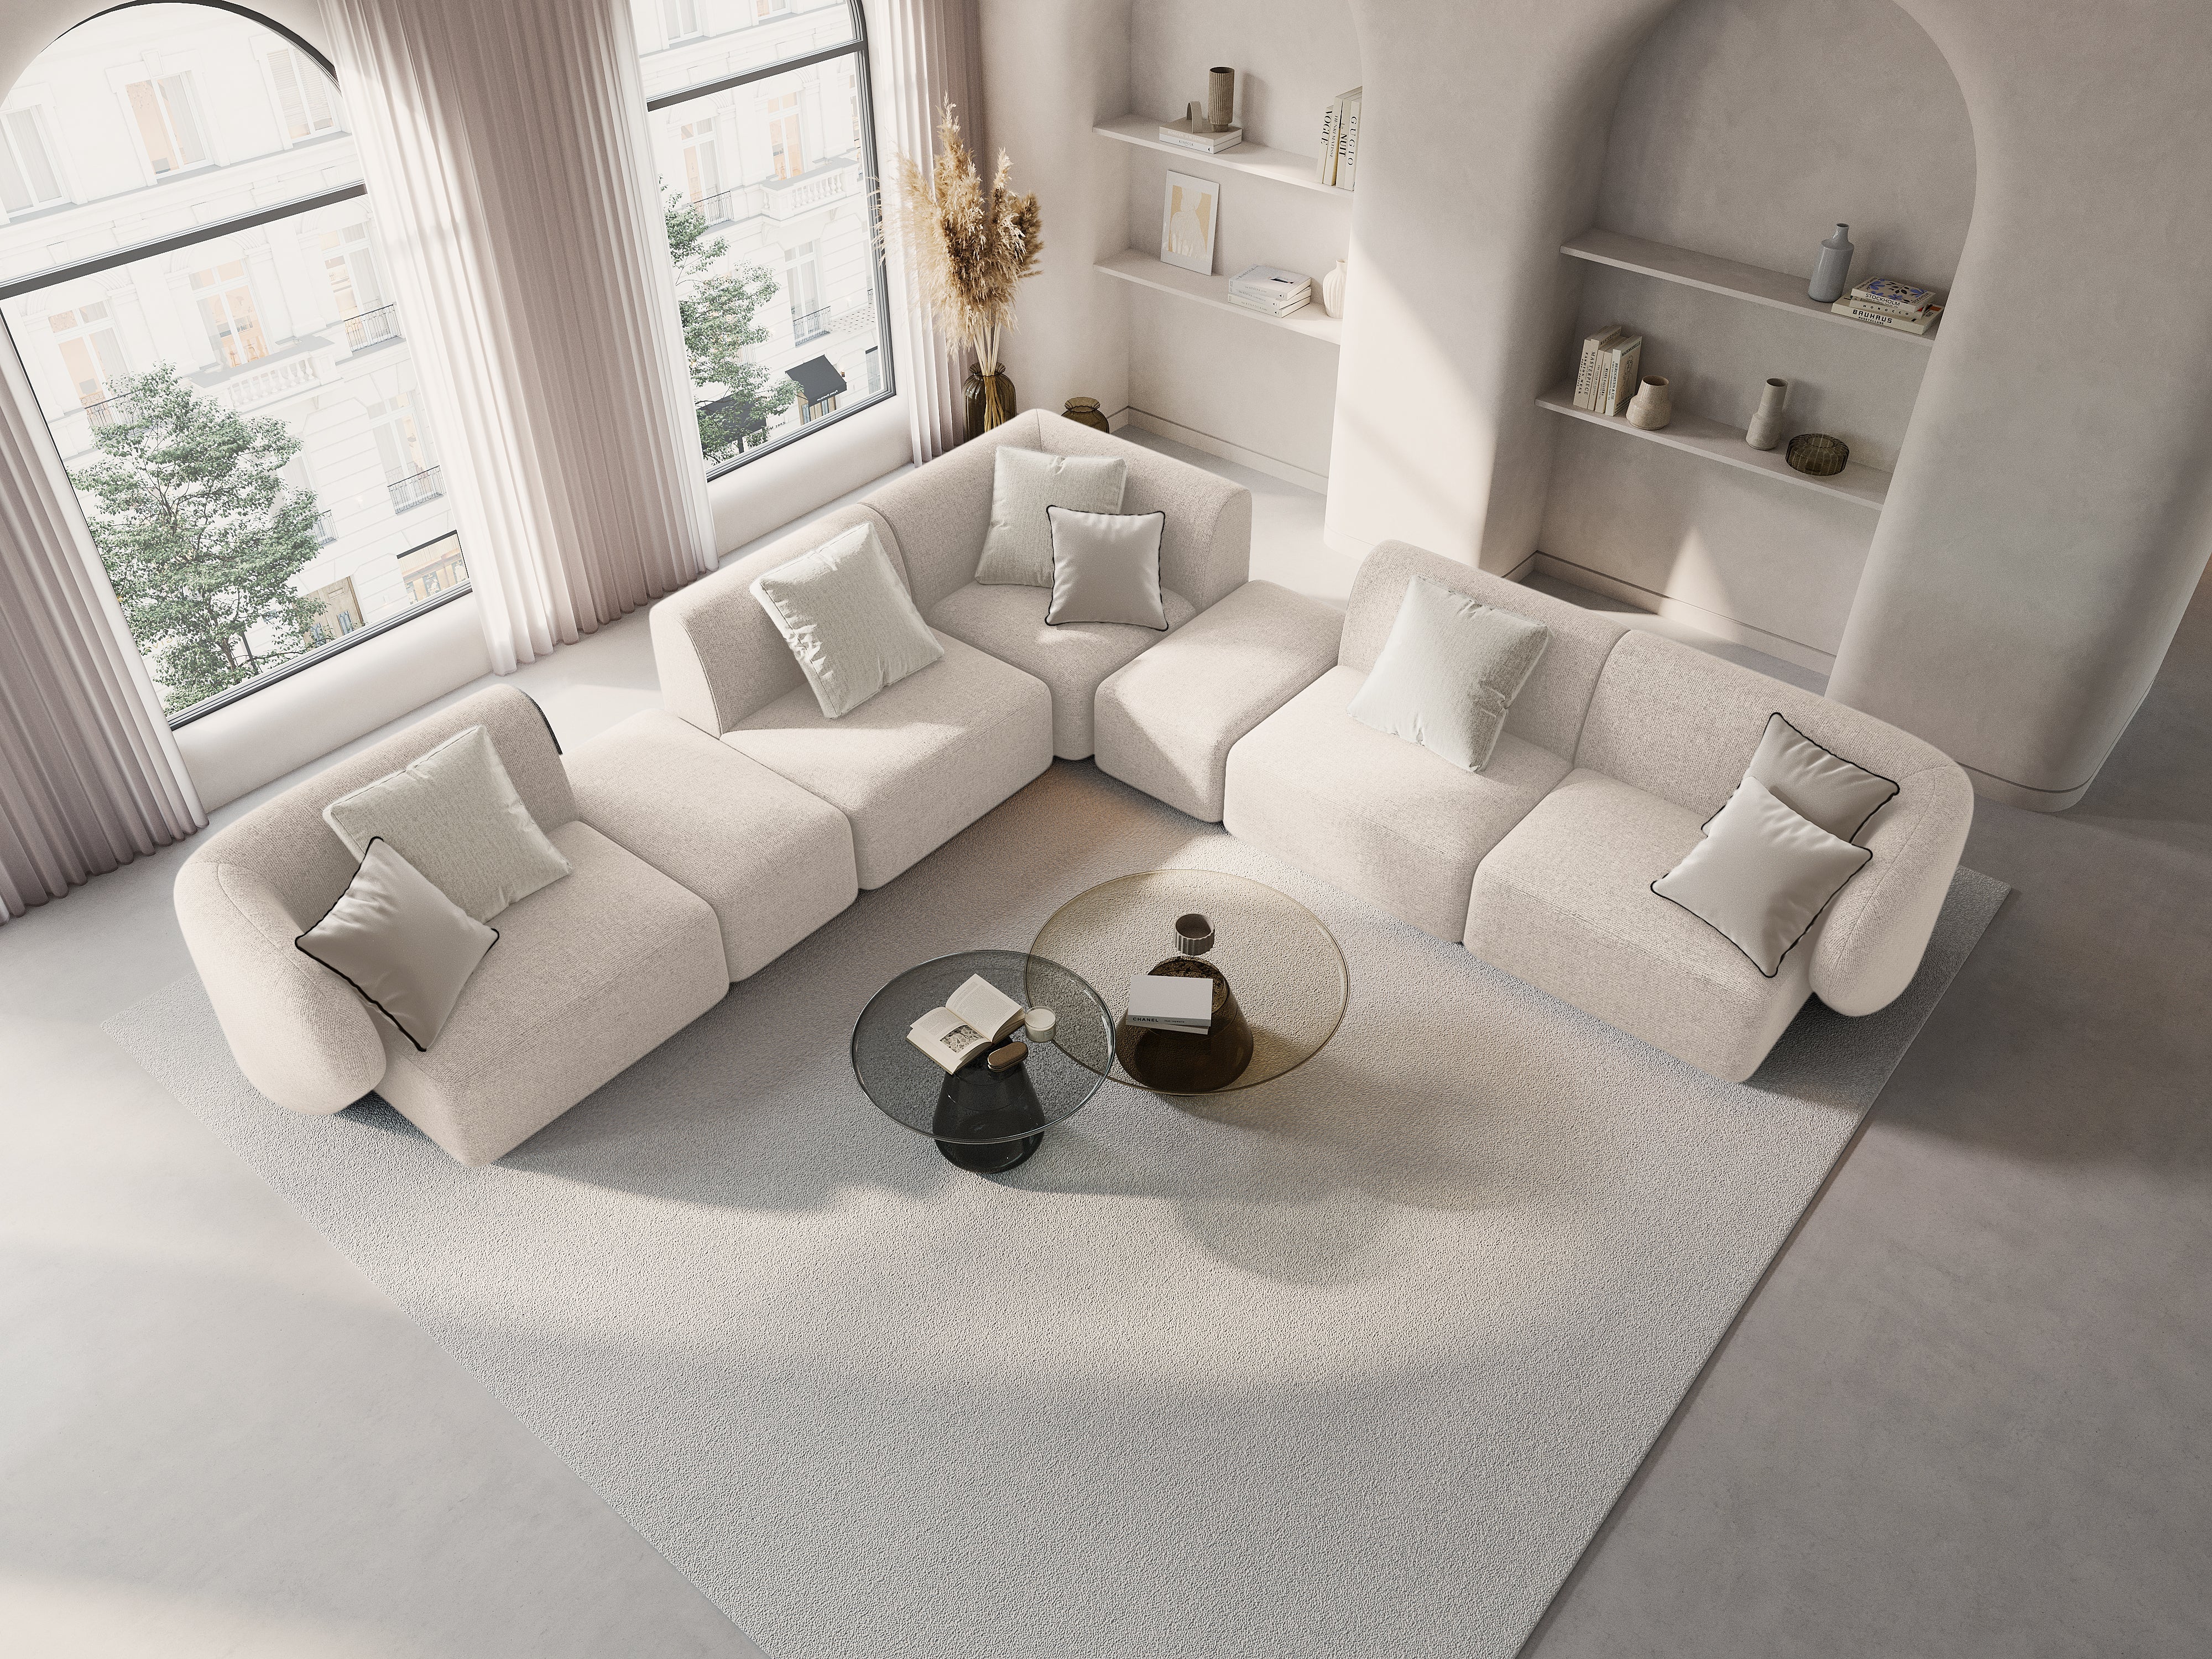 Duży, minimalistyczny narożnik w kolorze beżowym, umieszczony w jasnym pomieszczeniu urządzonym w stylu japandi - harmonijnym połączeniu japońskiego minimalizmu i skandynawskiej prostoty.